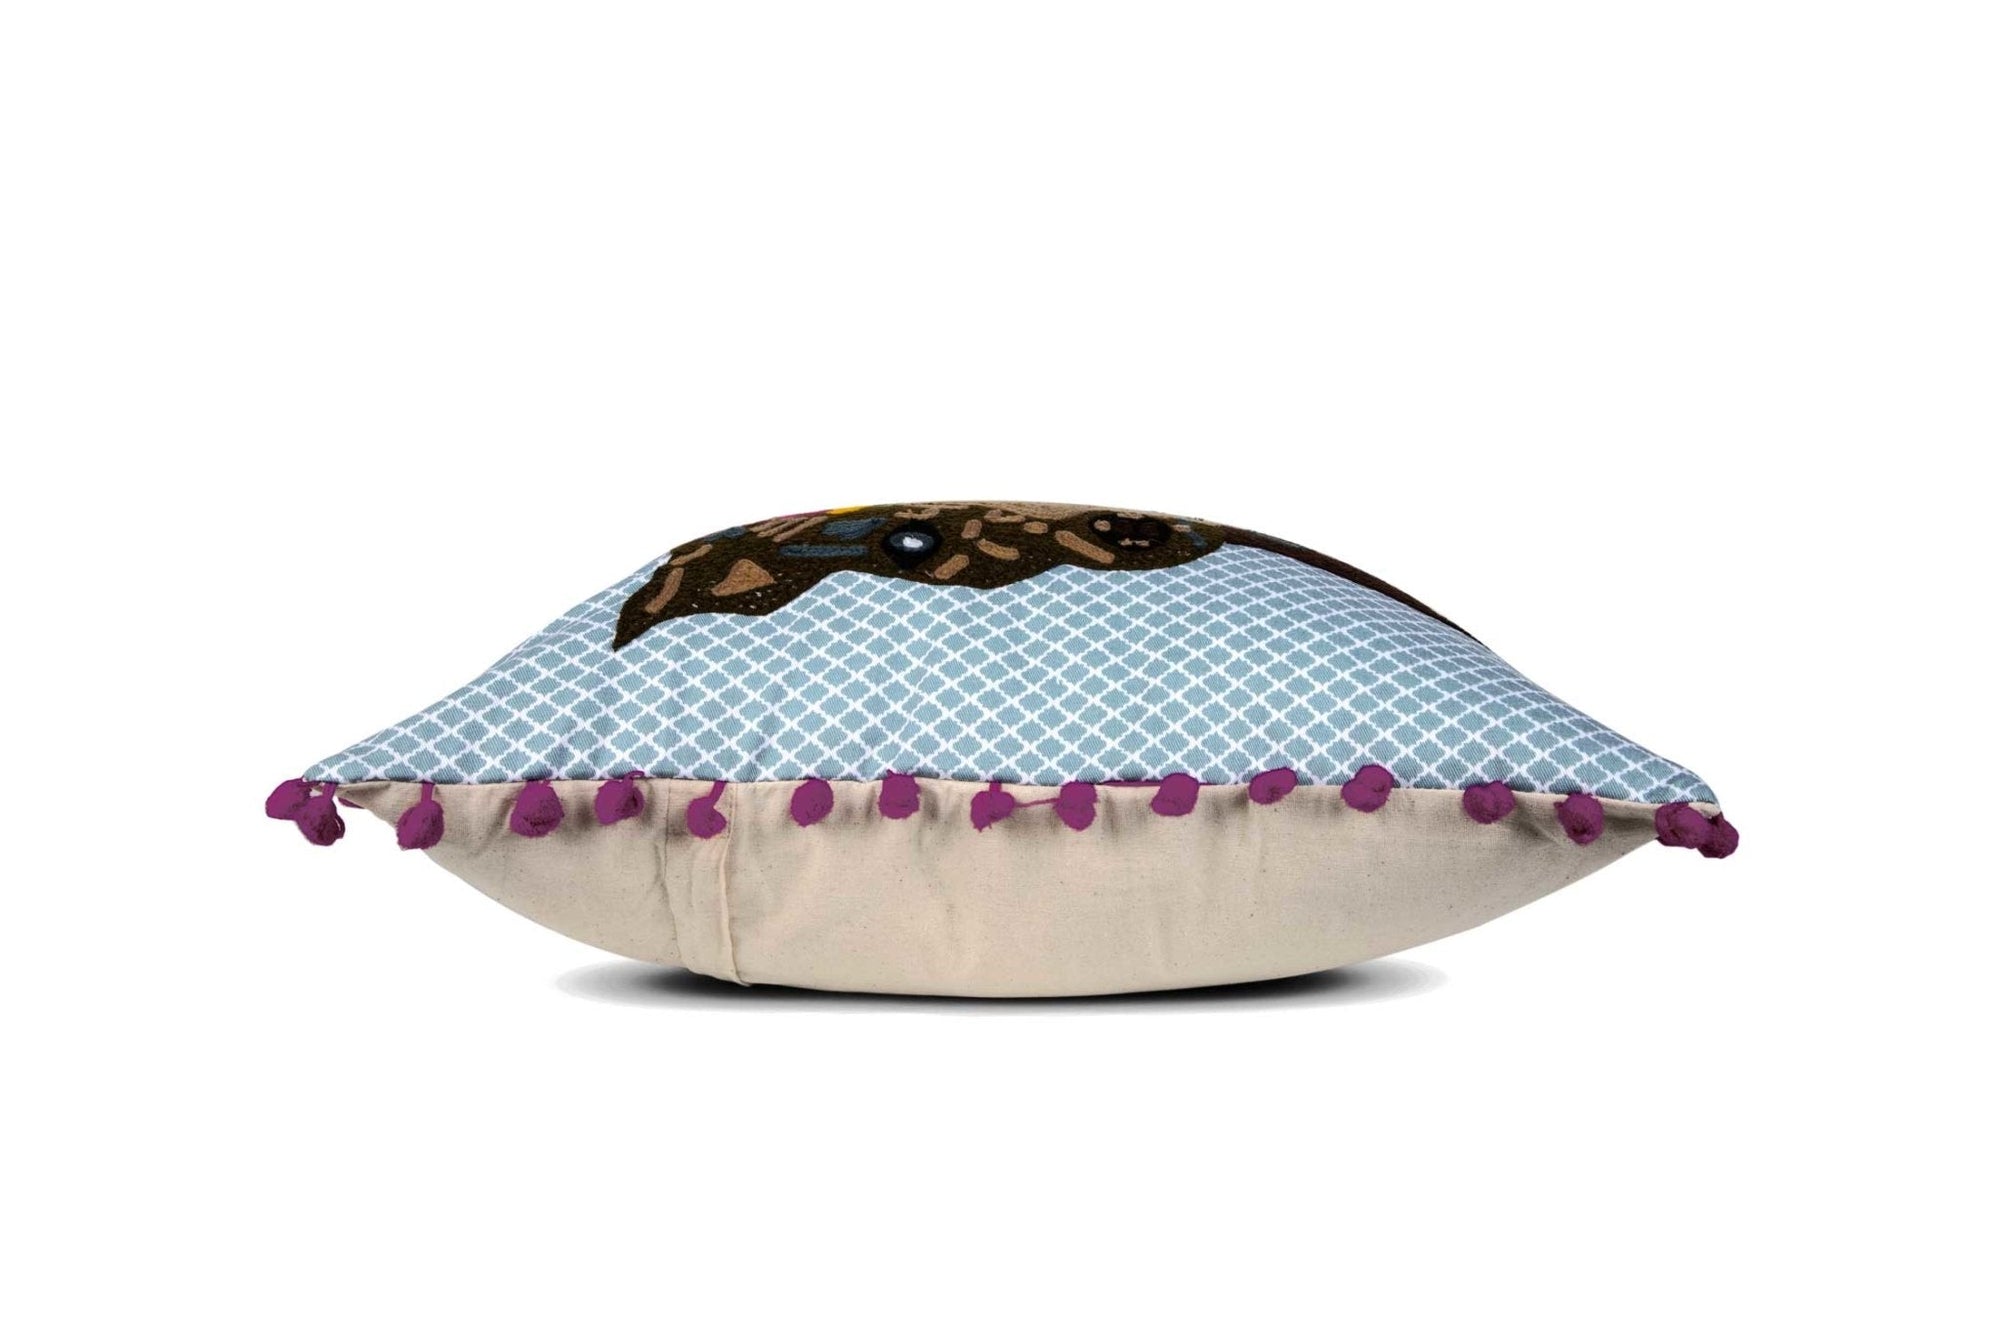 Flower Crown Terrier Pillow